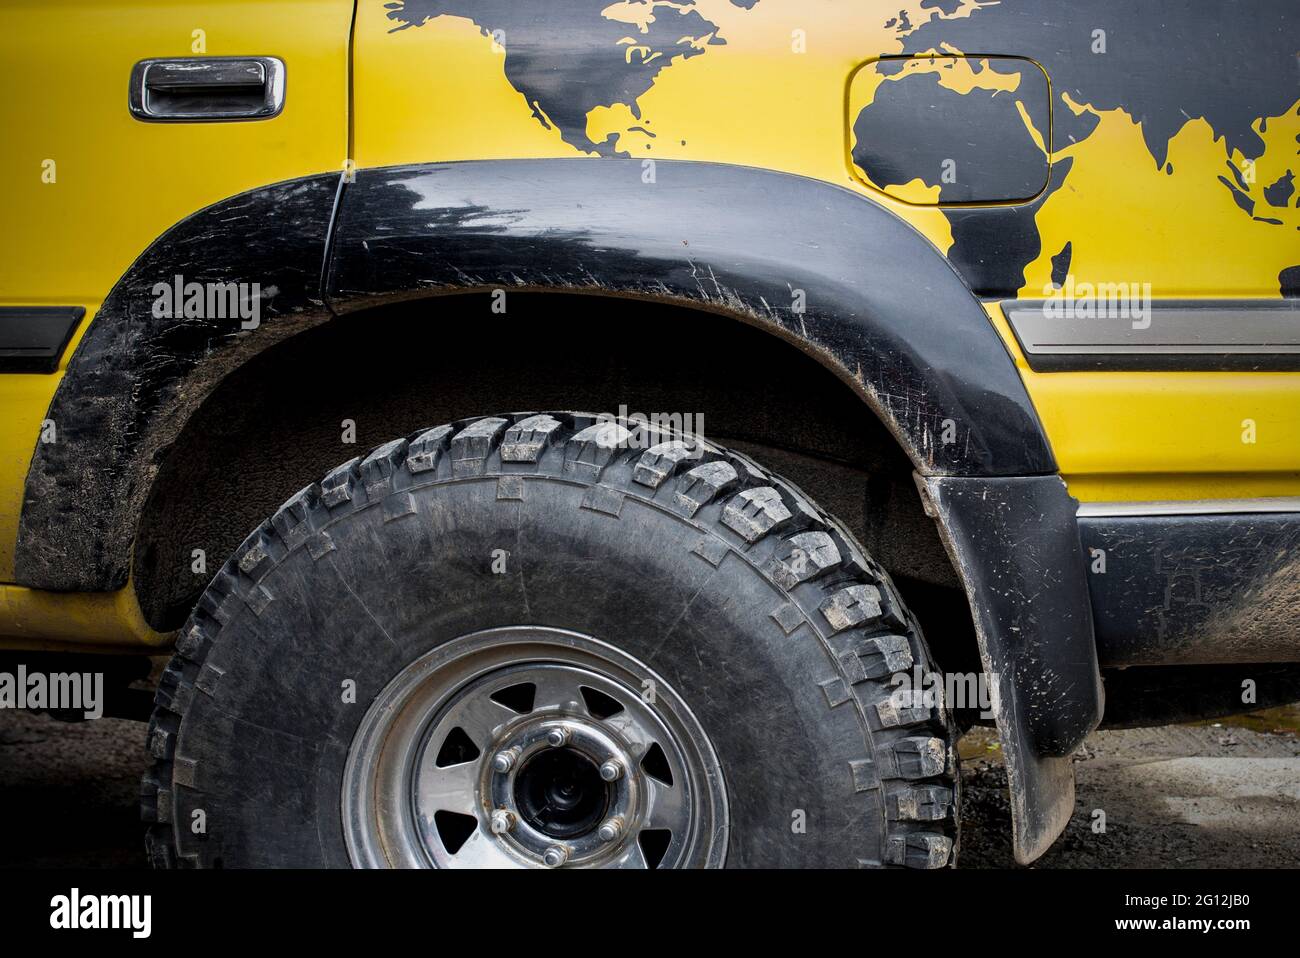 Veicolo fuoristrada per viaggiatori in tutto il mondo. Una mappa mondiale è dipinta sulla ruota posteriore. Foto Stock